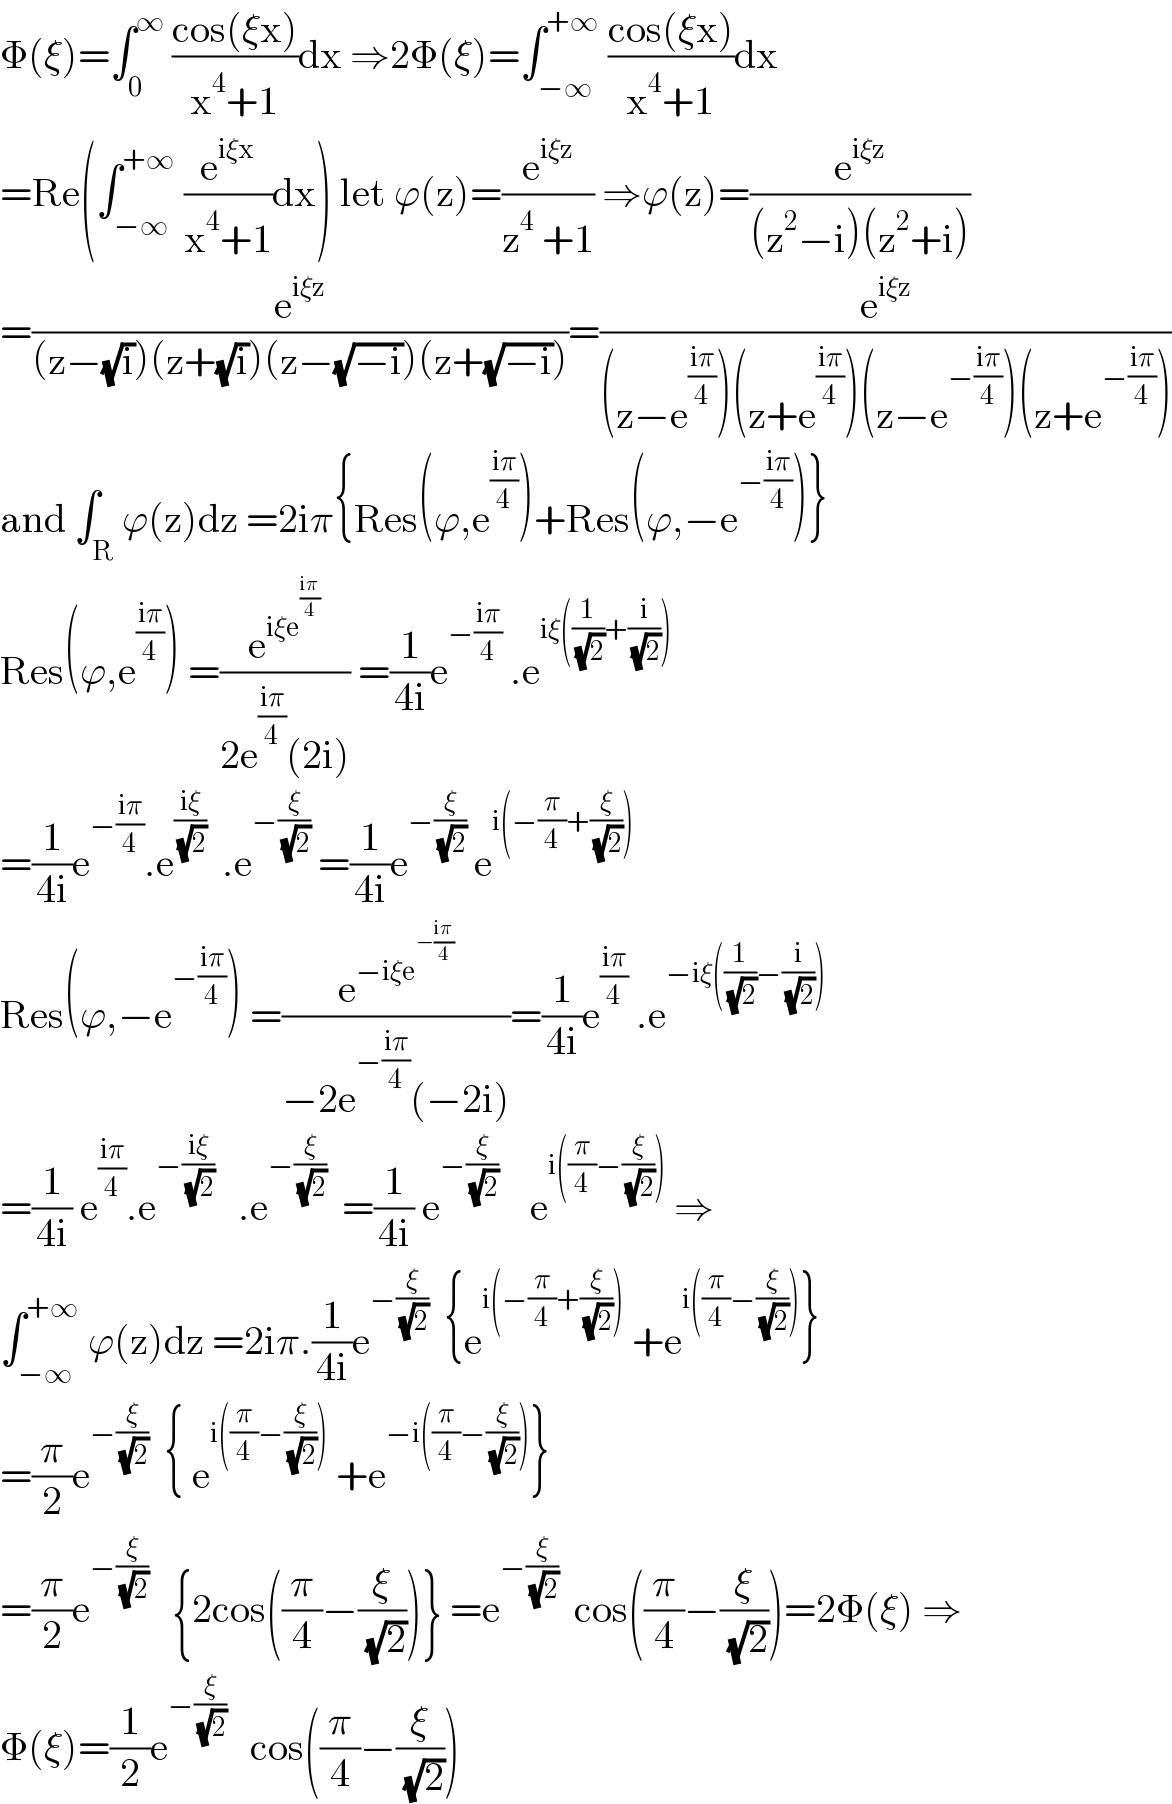 Φ(ξ)=∫_0 ^∞  ((cos(ξx))/(x^4 +1))dx ⇒2Φ(ξ)=∫_(−∞) ^(+∞)  ((cos(ξx))/(x^4 +1))dx  =Re(∫_(−∞) ^(+∞)  (e^(iξx) /(x^4 +1))dx) let ϕ(z)=(e^(iξz) /(z^4  +1)) ⇒ϕ(z)=(e^(iξz) /((z^2 −i)(z^2 +i)))  =(e^(iξz) /((z−(√i))(z+(√i))(z−(√(−i)))(z+(√(−i)))))=(e^(iξz) /((z−e^((iπ)/4) )(z+e^((iπ)/4) )(z−e^(−((iπ)/4)) )(z+e^(−((iπ)/4)) )))  and ∫_R ϕ(z)dz =2iπ{Res(ϕ,e^((iπ)/4) )+Res(ϕ,−e^(−((iπ)/4)) )}  Res(ϕ,e^((iπ)/4) ) =(e^(iξe^((iπ)/4) ) /(2e^((iπ)/4) (2i))) =(1/(4i))e^(−((iπ)/4))  .e^(iξ((1/( (√2)))+(i/( (√2)))))   =(1/(4i))e^(−((iπ)/4)) .e^((iξ)/( (√2)))   .e^(−(ξ/( (√2))))  =(1/(4i))e^(−(ξ/( (√2))))  e^(i(−(π/4)+(ξ/( (√2)))))   Res(ϕ,−e^(−((iπ)/4)) ) =(e^(−iξe^(−((iπ)/4)) ) /(−2e^(−((iπ)/4)) (−2i)))=(1/(4i))e^((iπ)/4)  .e^(−iξ((1/( (√2)))−(i/( (√2)))))   =(1/(4i)) e^((iπ)/4) .e^(−((iξ)/( (√2))))    .e^(−(ξ/( (√2))))   =(1/(4i)) e^(−(ξ/( (√2))))     e^(i((π/4)−(ξ/( (√2)))))  ⇒  ∫_(−∞) ^(+∞)  ϕ(z)dz =2iπ.(1/(4i))e^(−(ξ/( (√2))))   {e^(i(−(π/4)+(ξ/( (√2)))))  +e^(i((π/4)−(ξ/( (√2))))) }  =(π/2)e^(−(ξ/( (√2))))   { e^(i((π/4)−(ξ/( (√2)))))  +e^(−i((π/4)−(ξ/( (√2))))) }  =(π/2)e^(−(ξ/( (√2))))    {2cos((π/4)−(ξ/( (√2))))} =e^(−(ξ/( (√2))))   cos((π/4)−(ξ/( (√2))))=2Φ(ξ) ⇒  Φ(ξ)=(1/2)e^(−(ξ/( (√2))))    cos((π/4)−(ξ/( (√2))))  